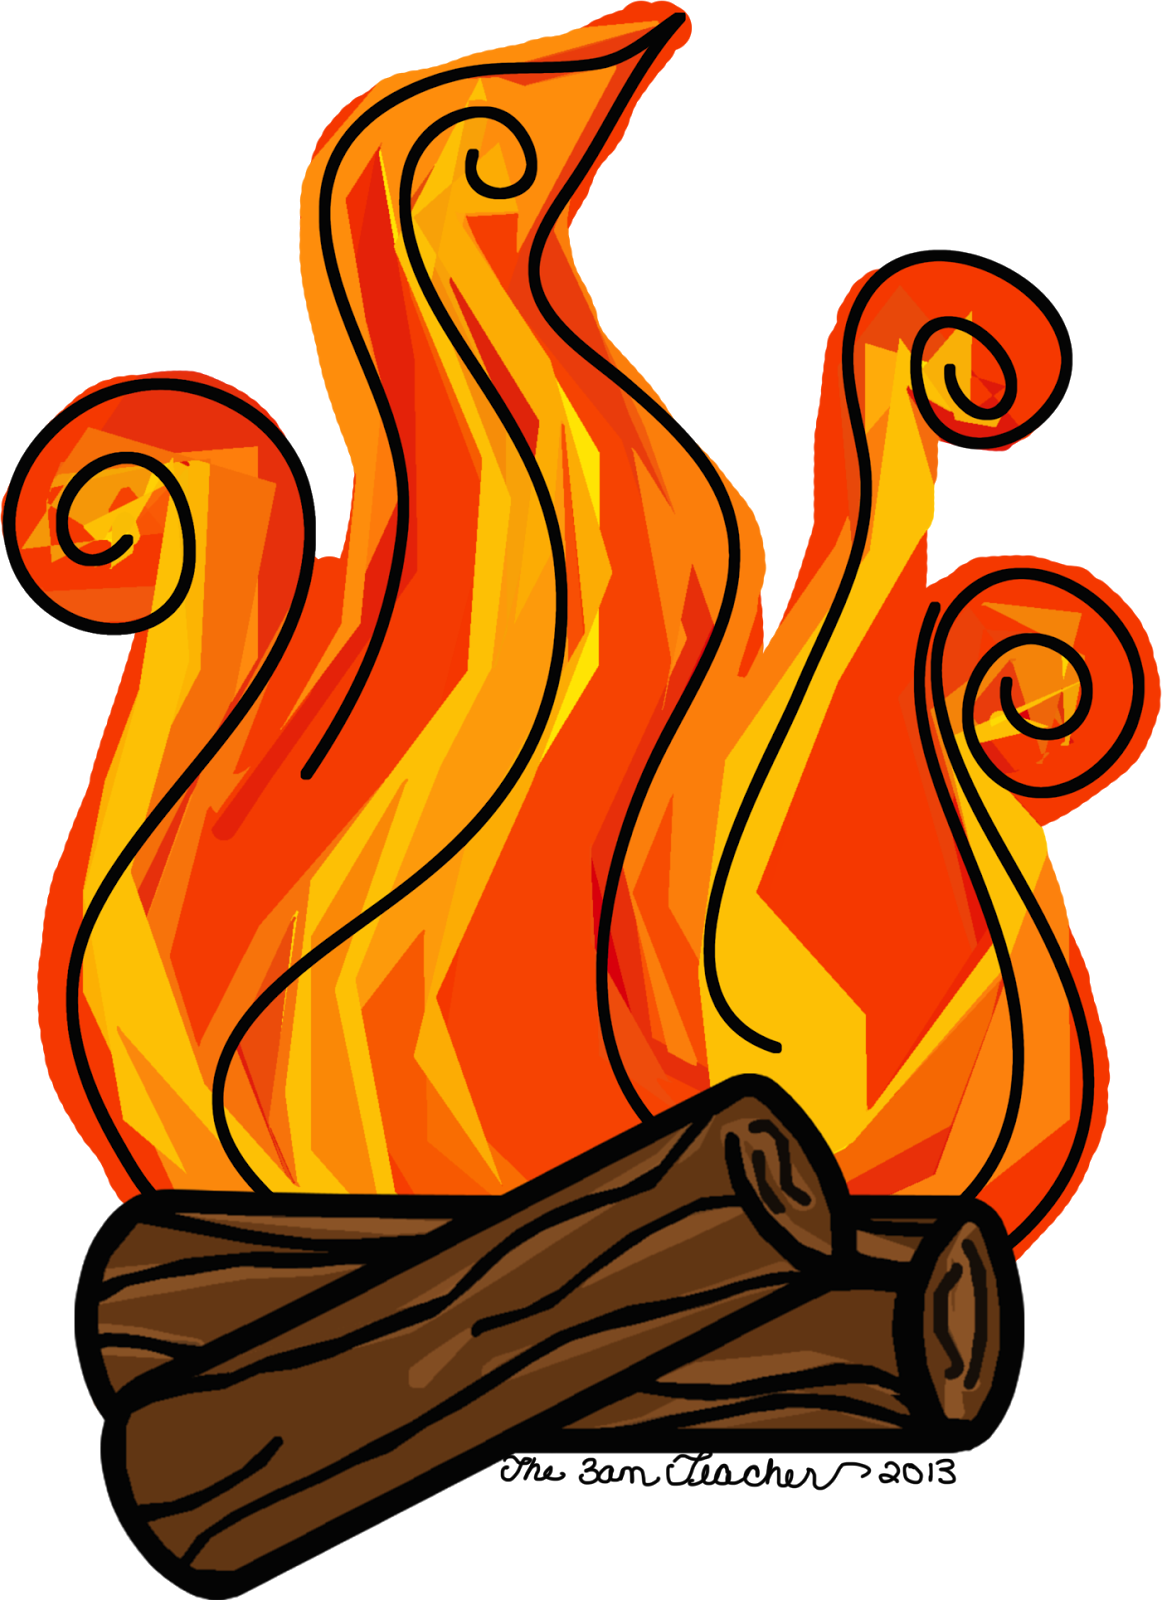 fireball clipart fireplace fire